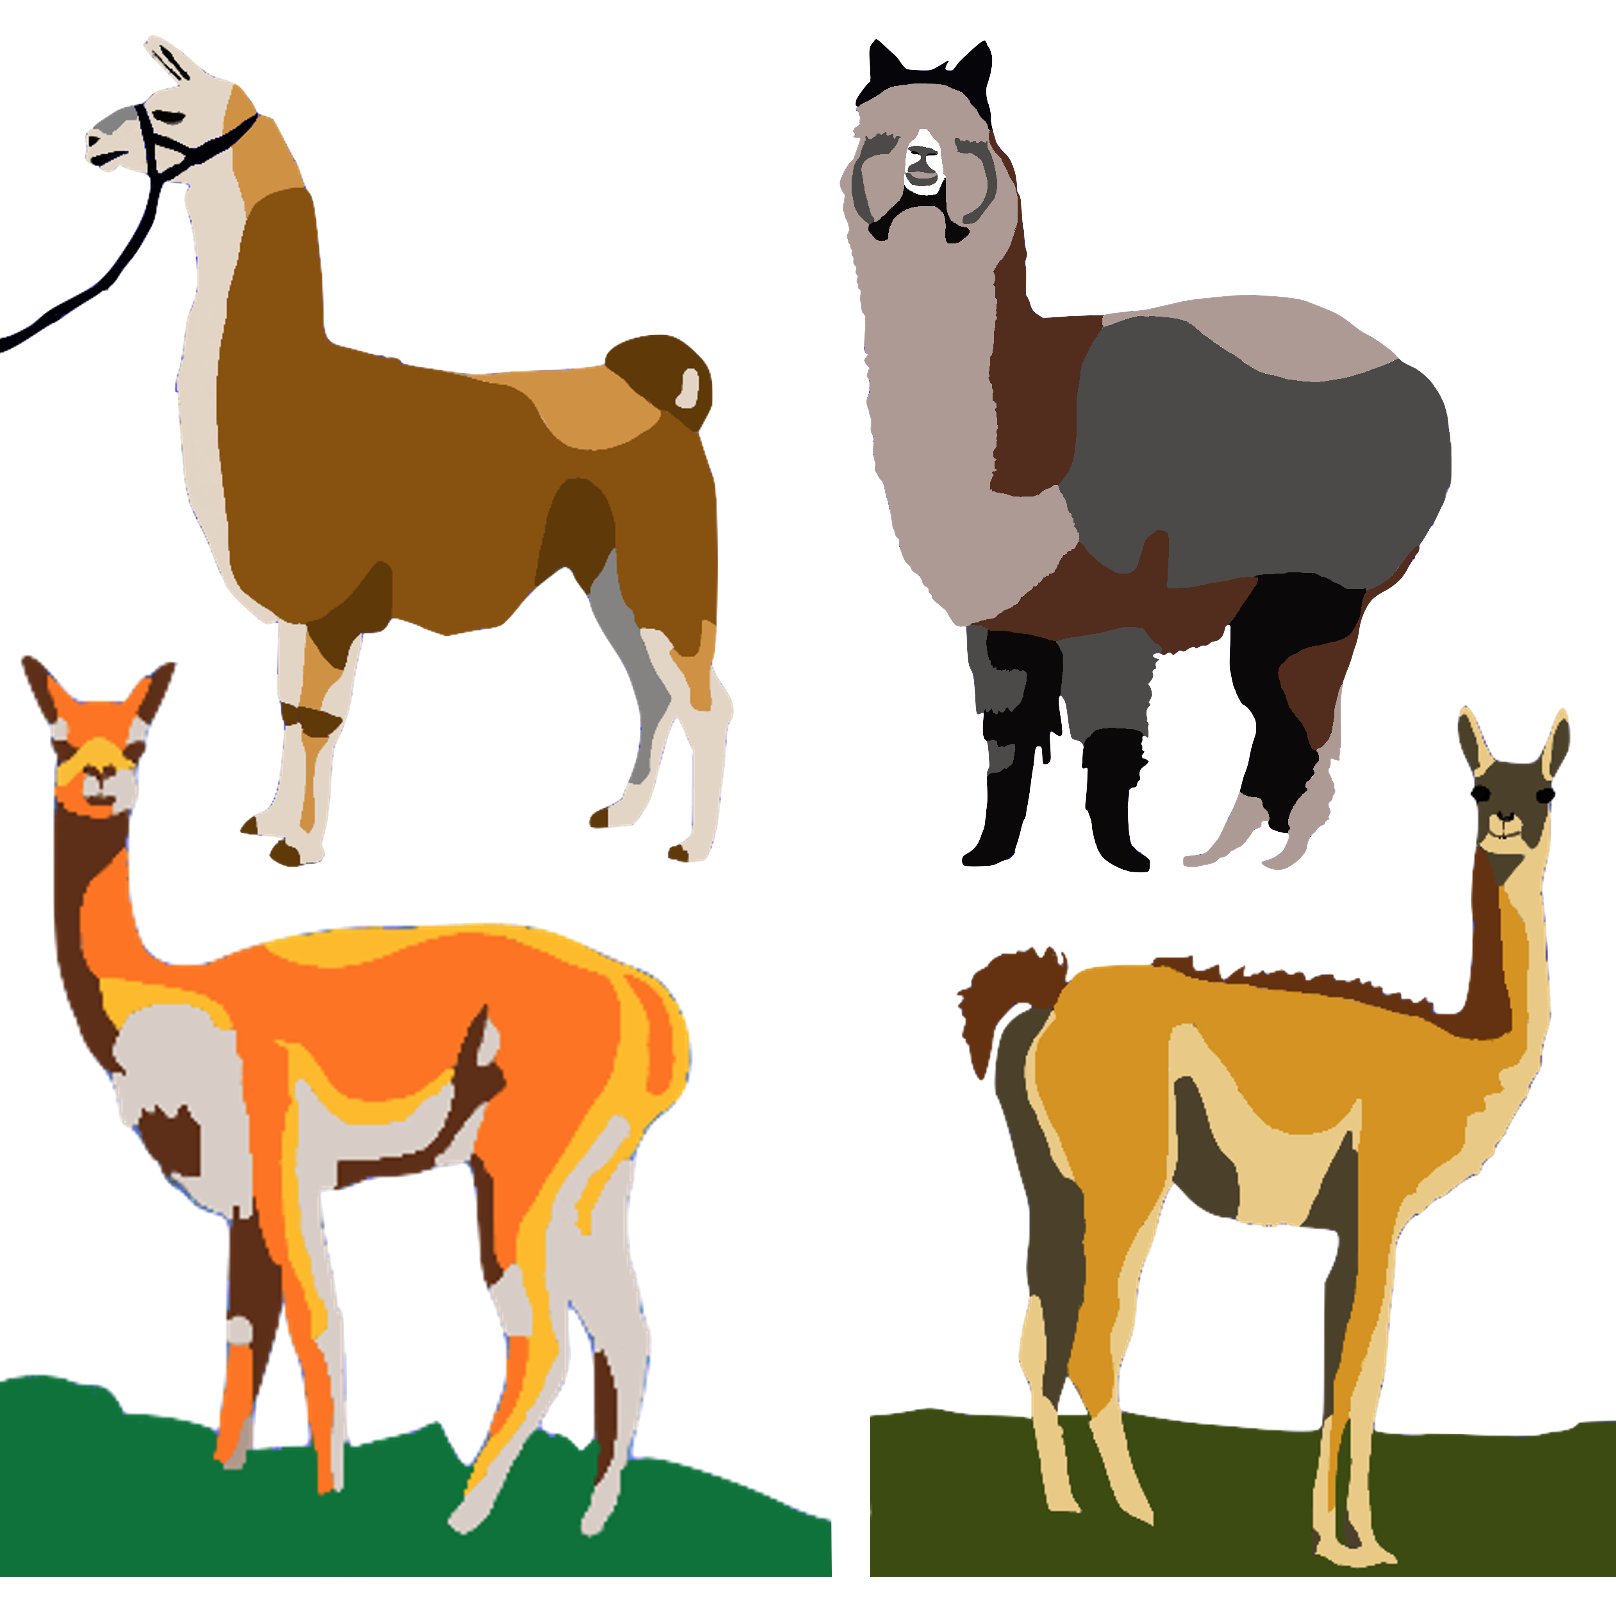 Llama, Alpaca, Guanaco and Vicuña 